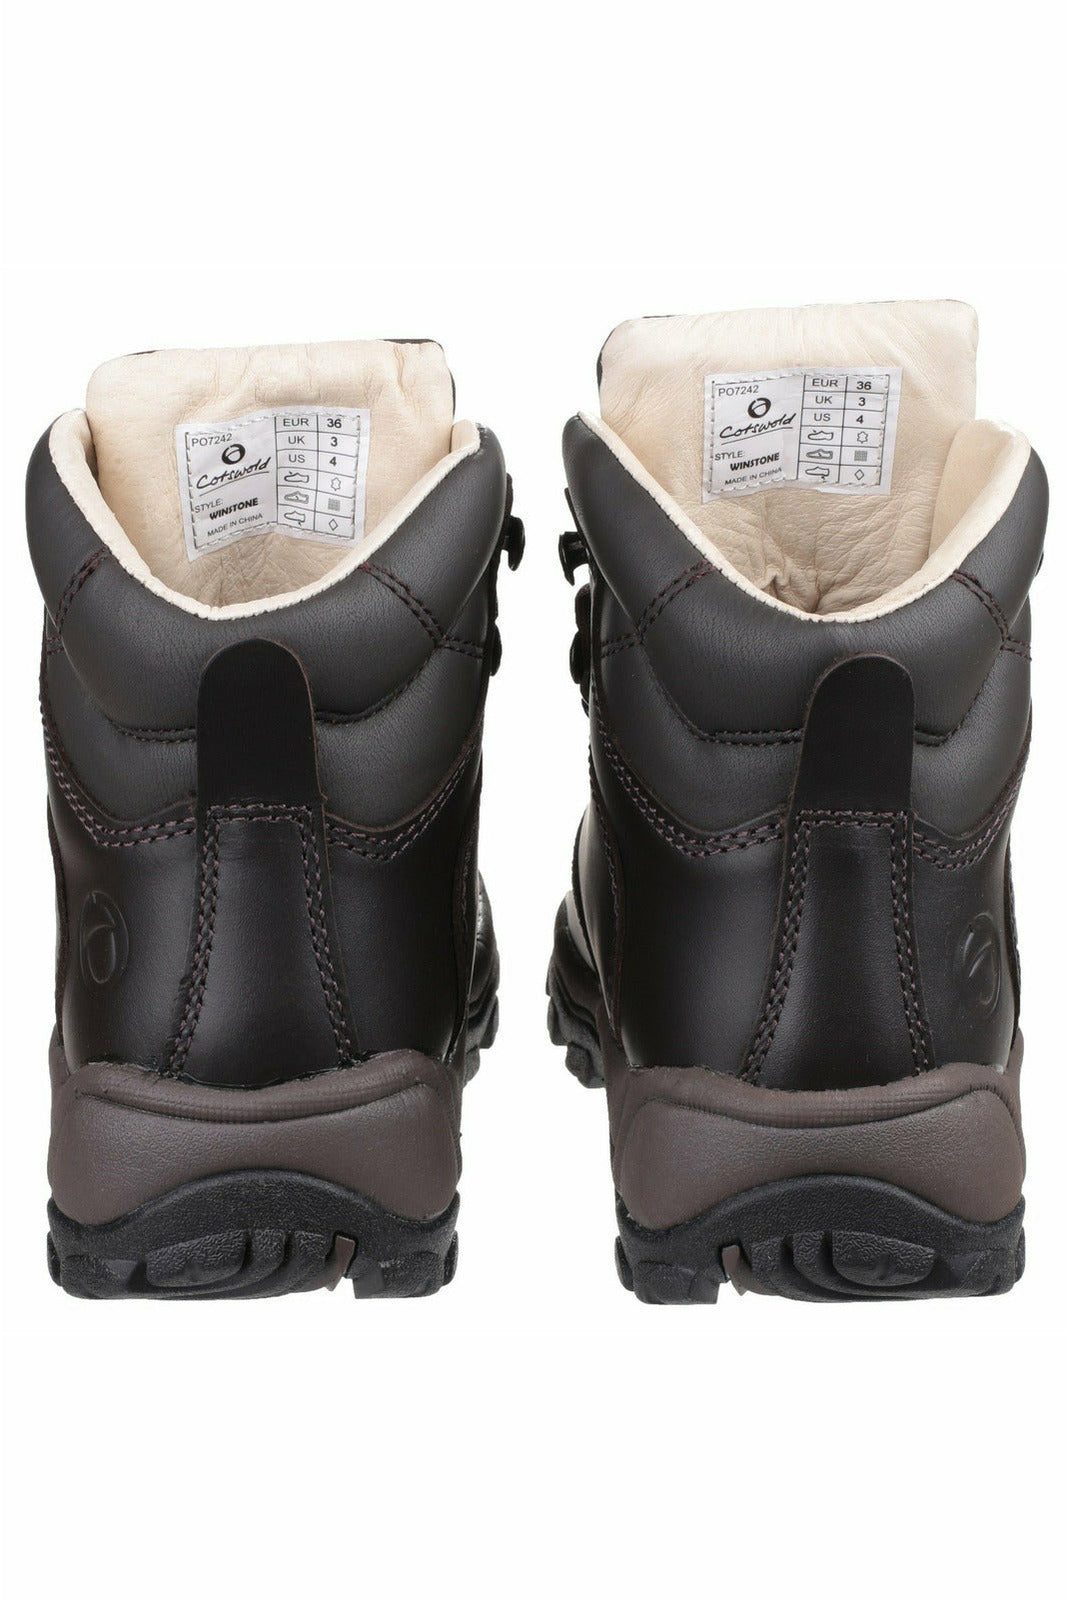 Cotswold - Wodoodporne damskie buty trekkingowe Winstone